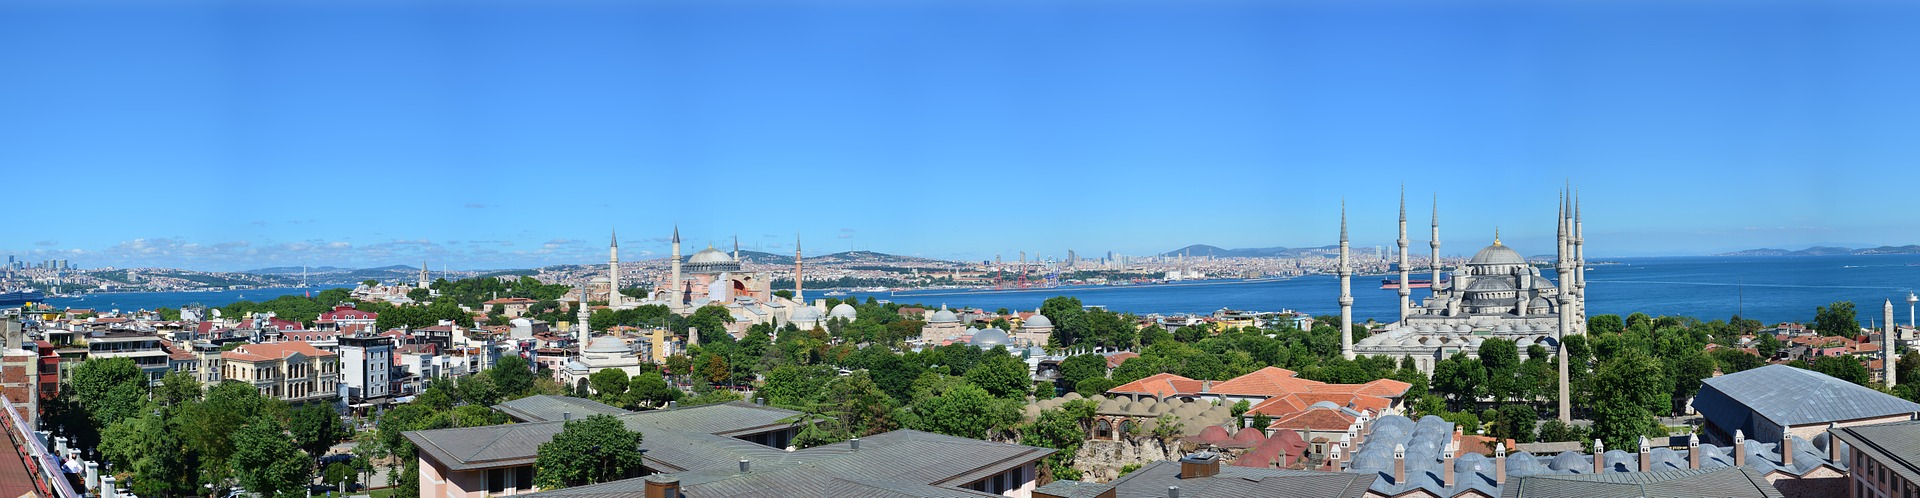 Istanbul, Turkey LovettSports.com